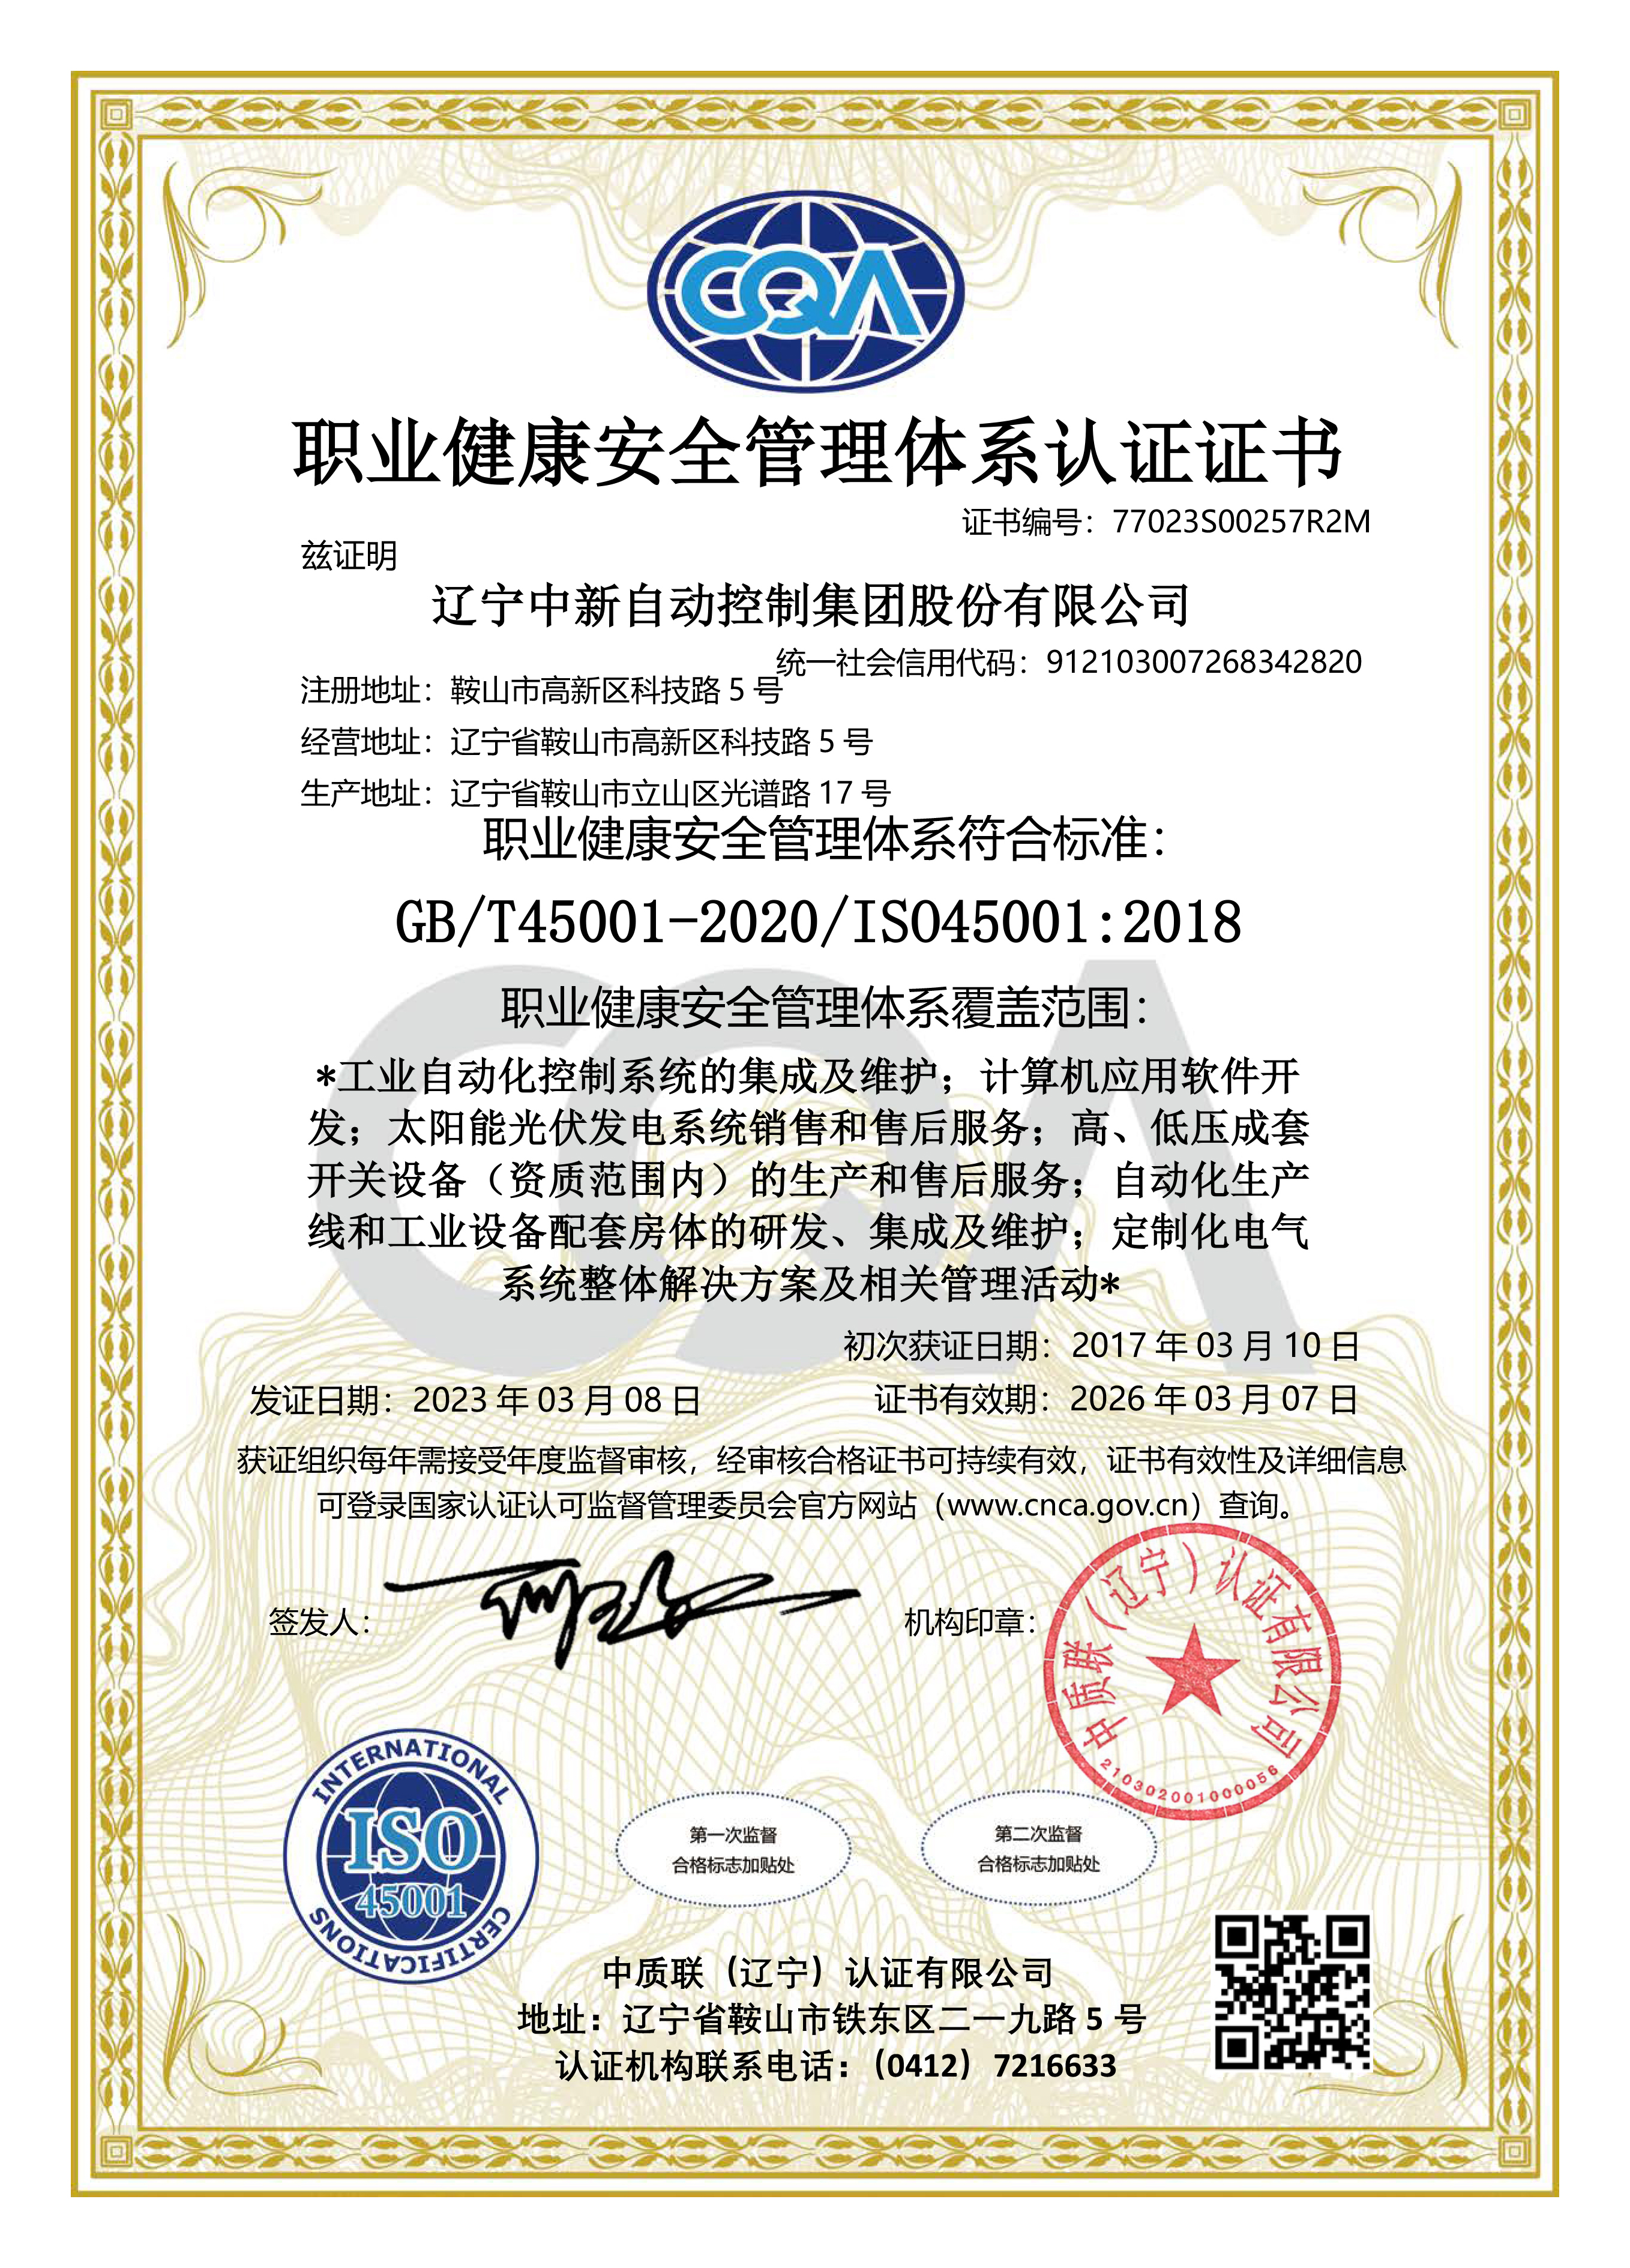 职业健康安全管理体系认证证书-中文-资质证书-辽宁中新